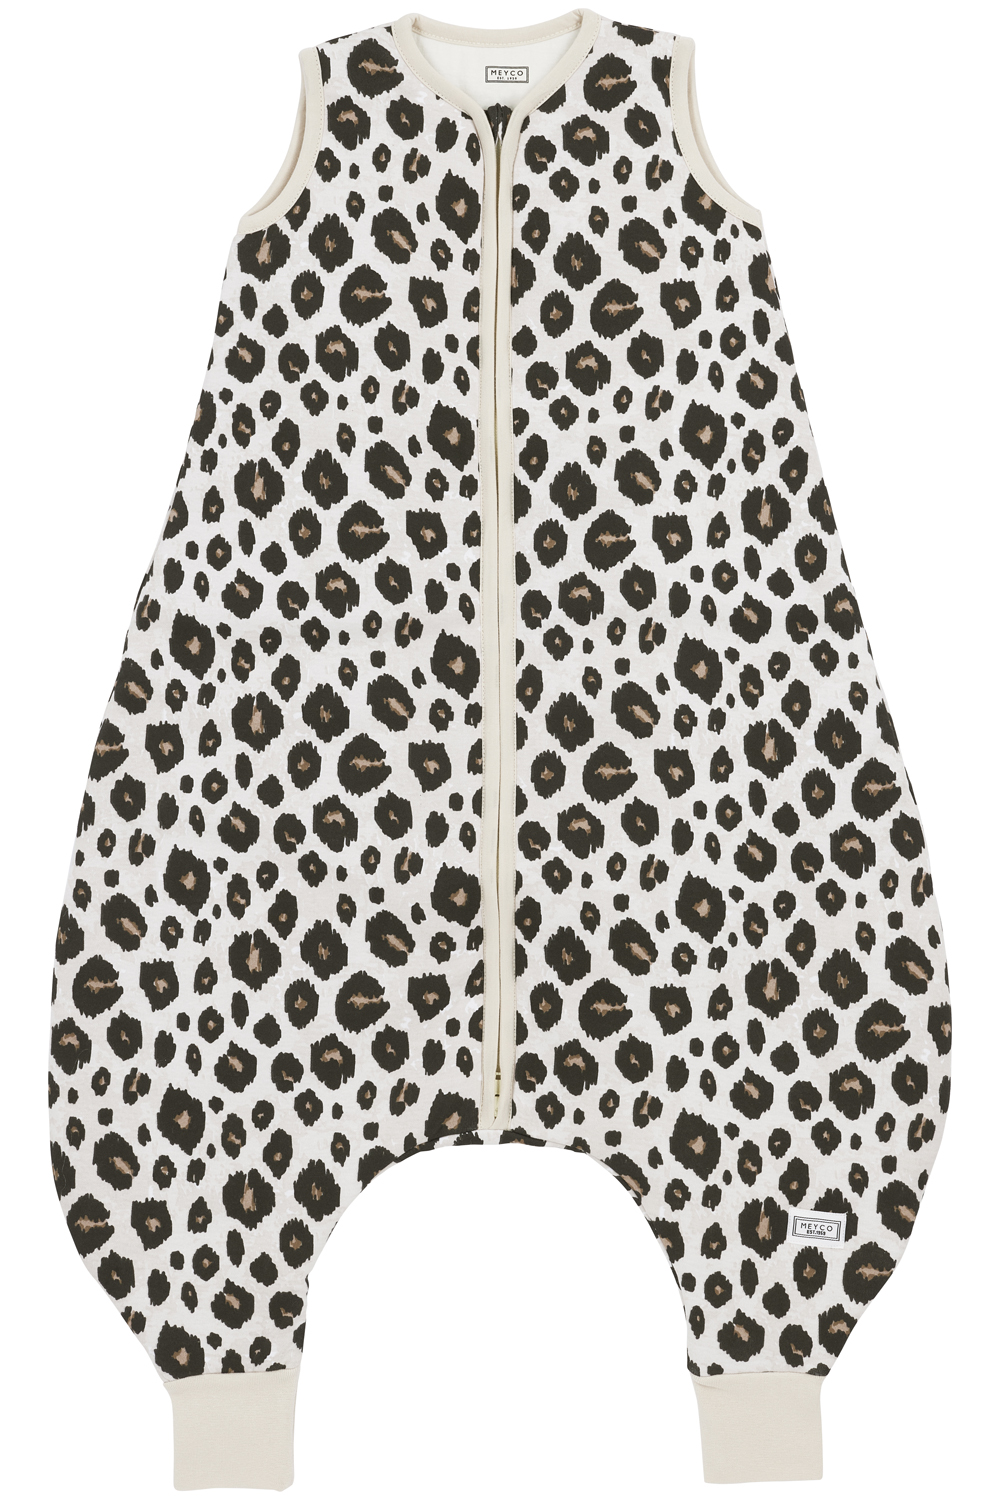 Baby Sleeping bag Jumper Leopard - Sand Melange - 80cm